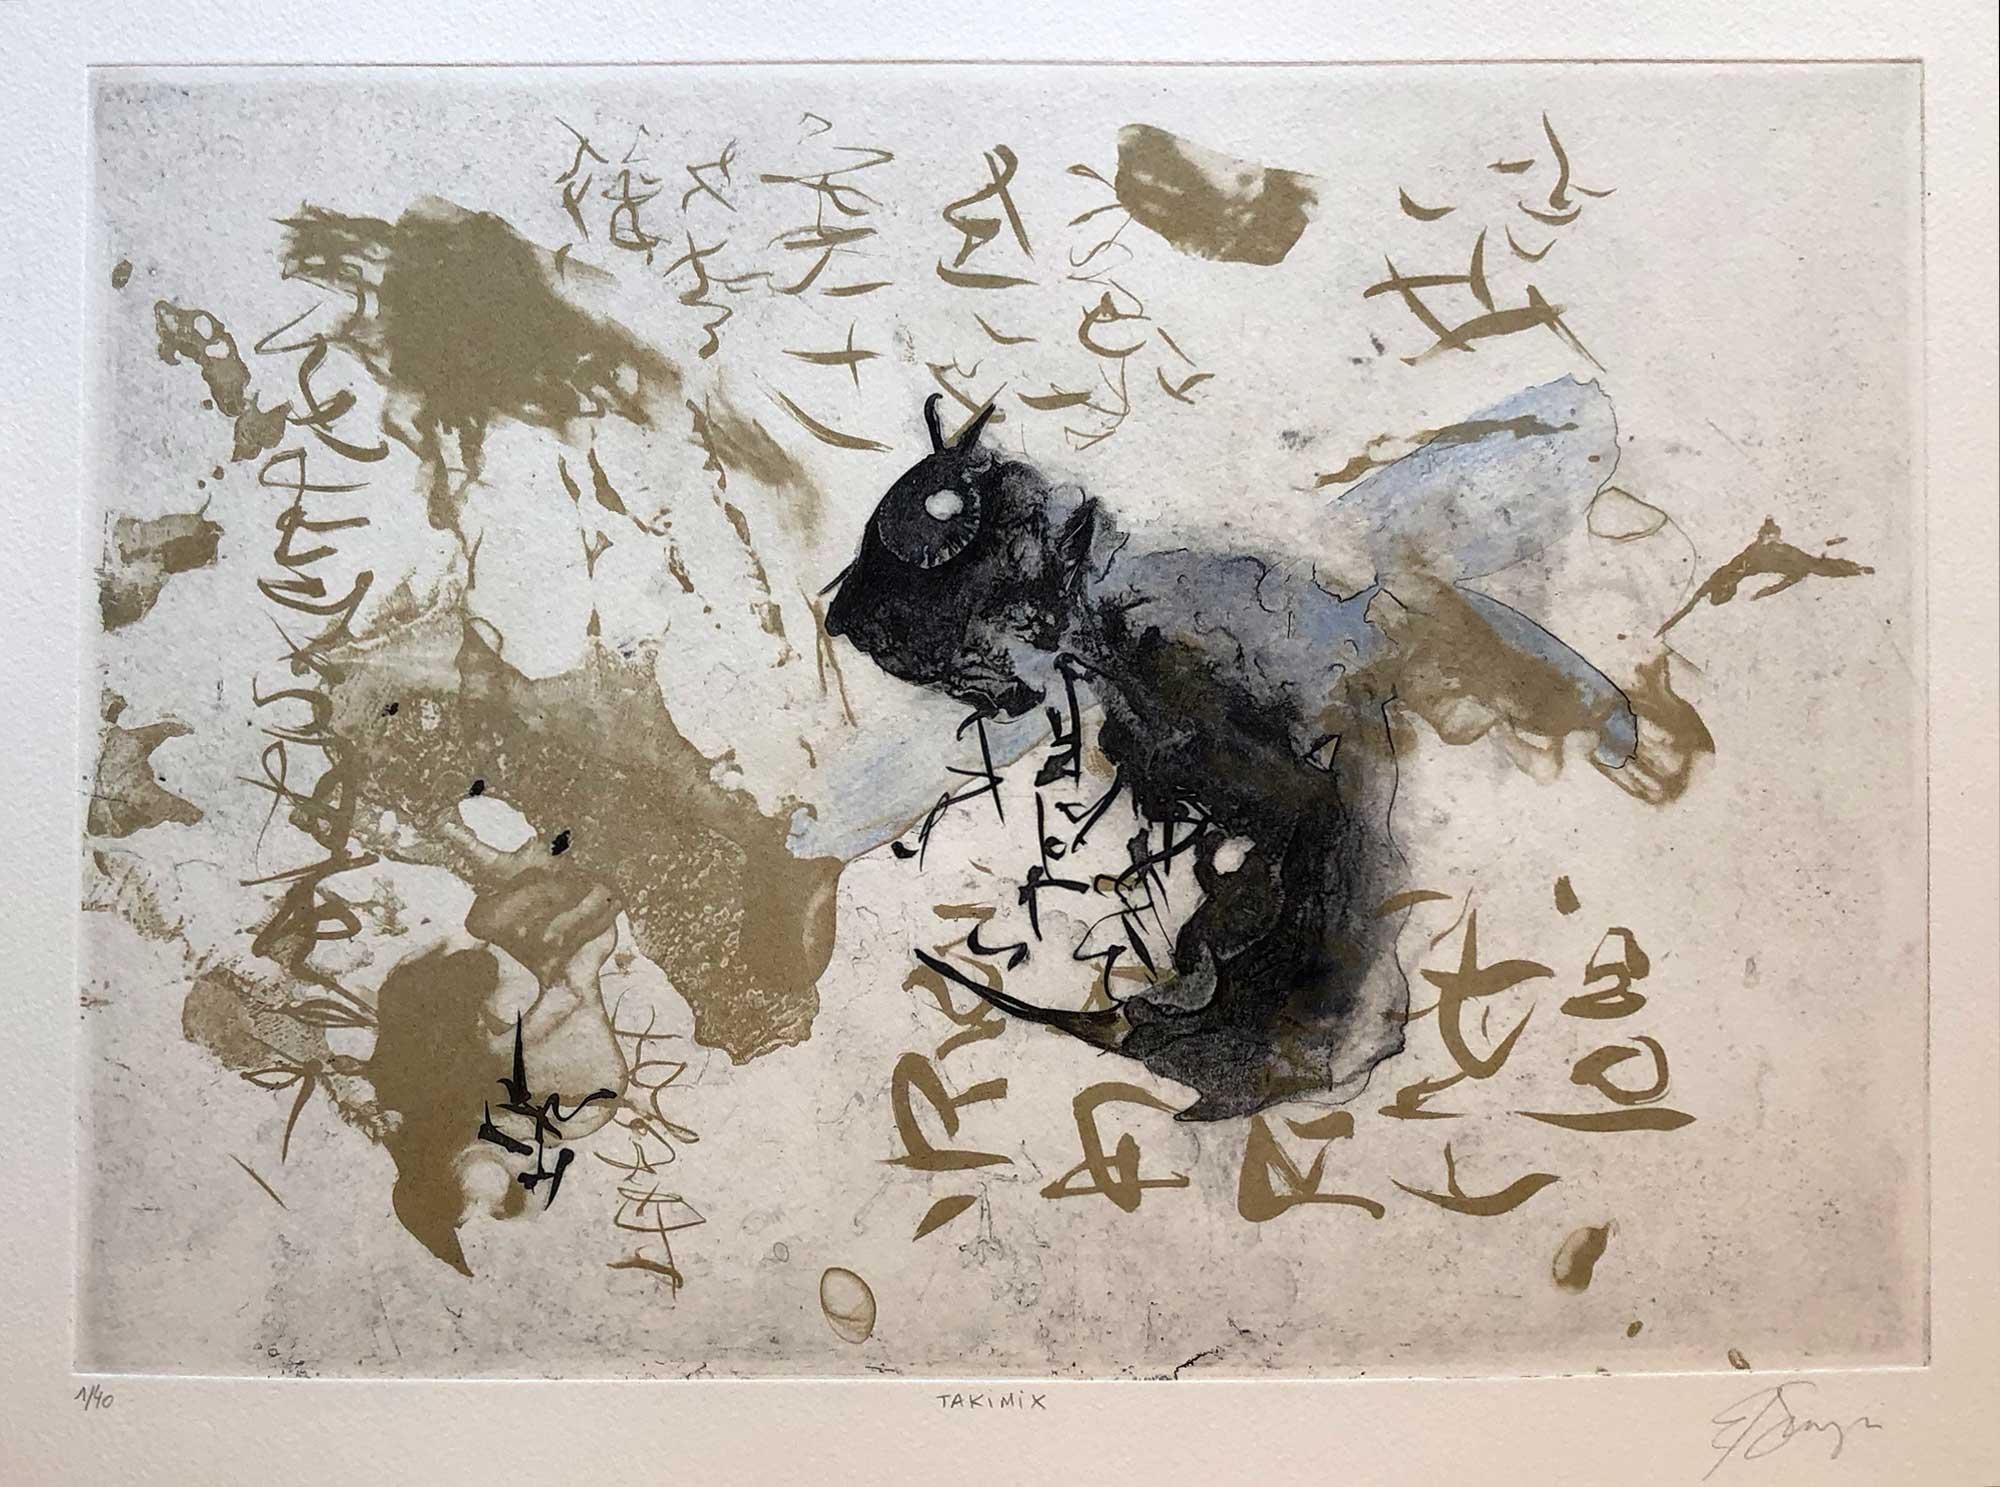 Barbara Shunyi Abstract Print - Takamix